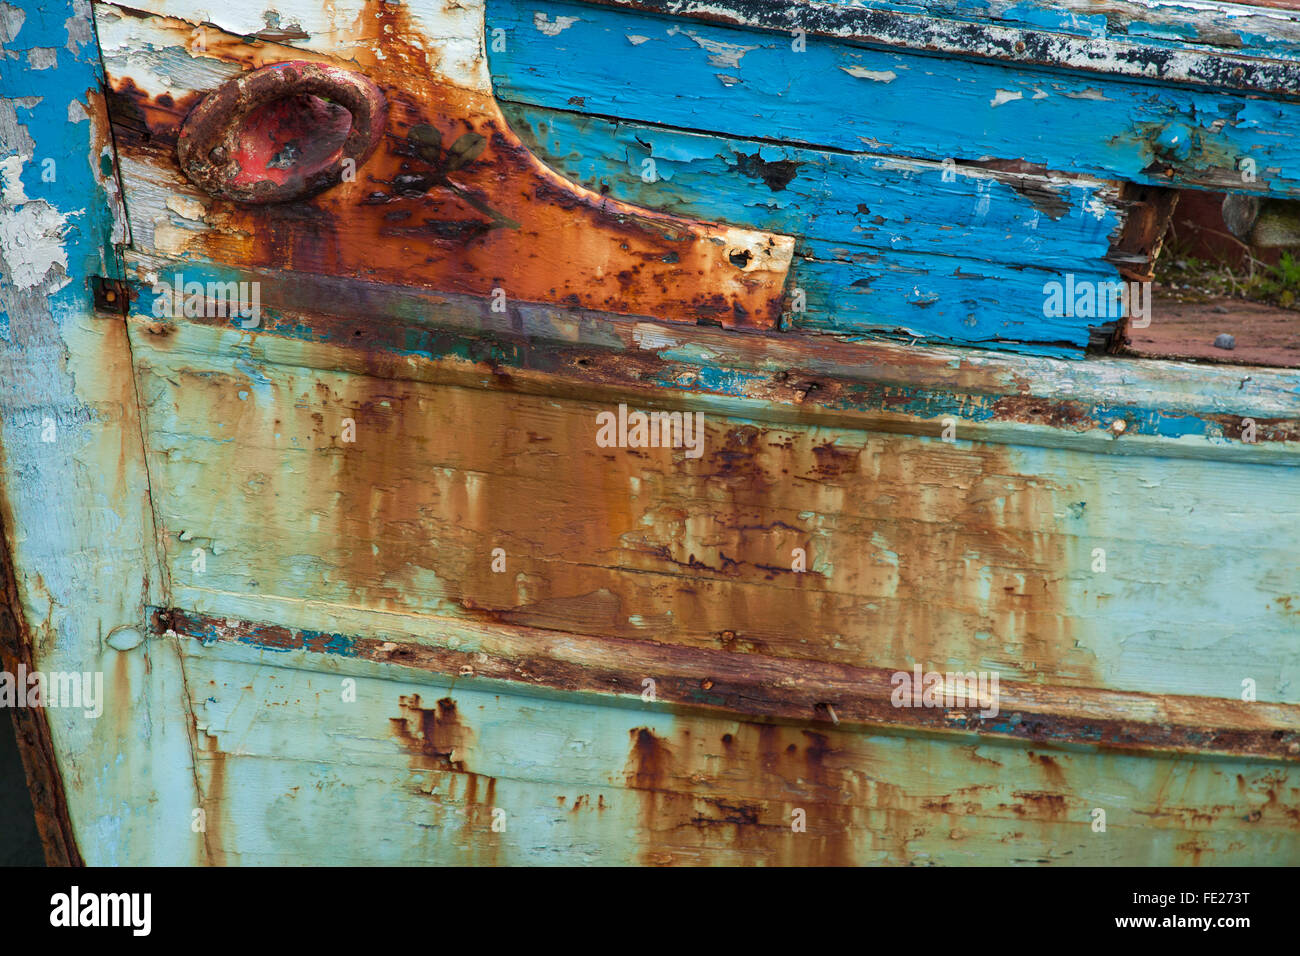 Detalle de óxido y pintura en un viejo barco de pesca, Killala, en el condado de Mayo, Irlanda. Foto de stock